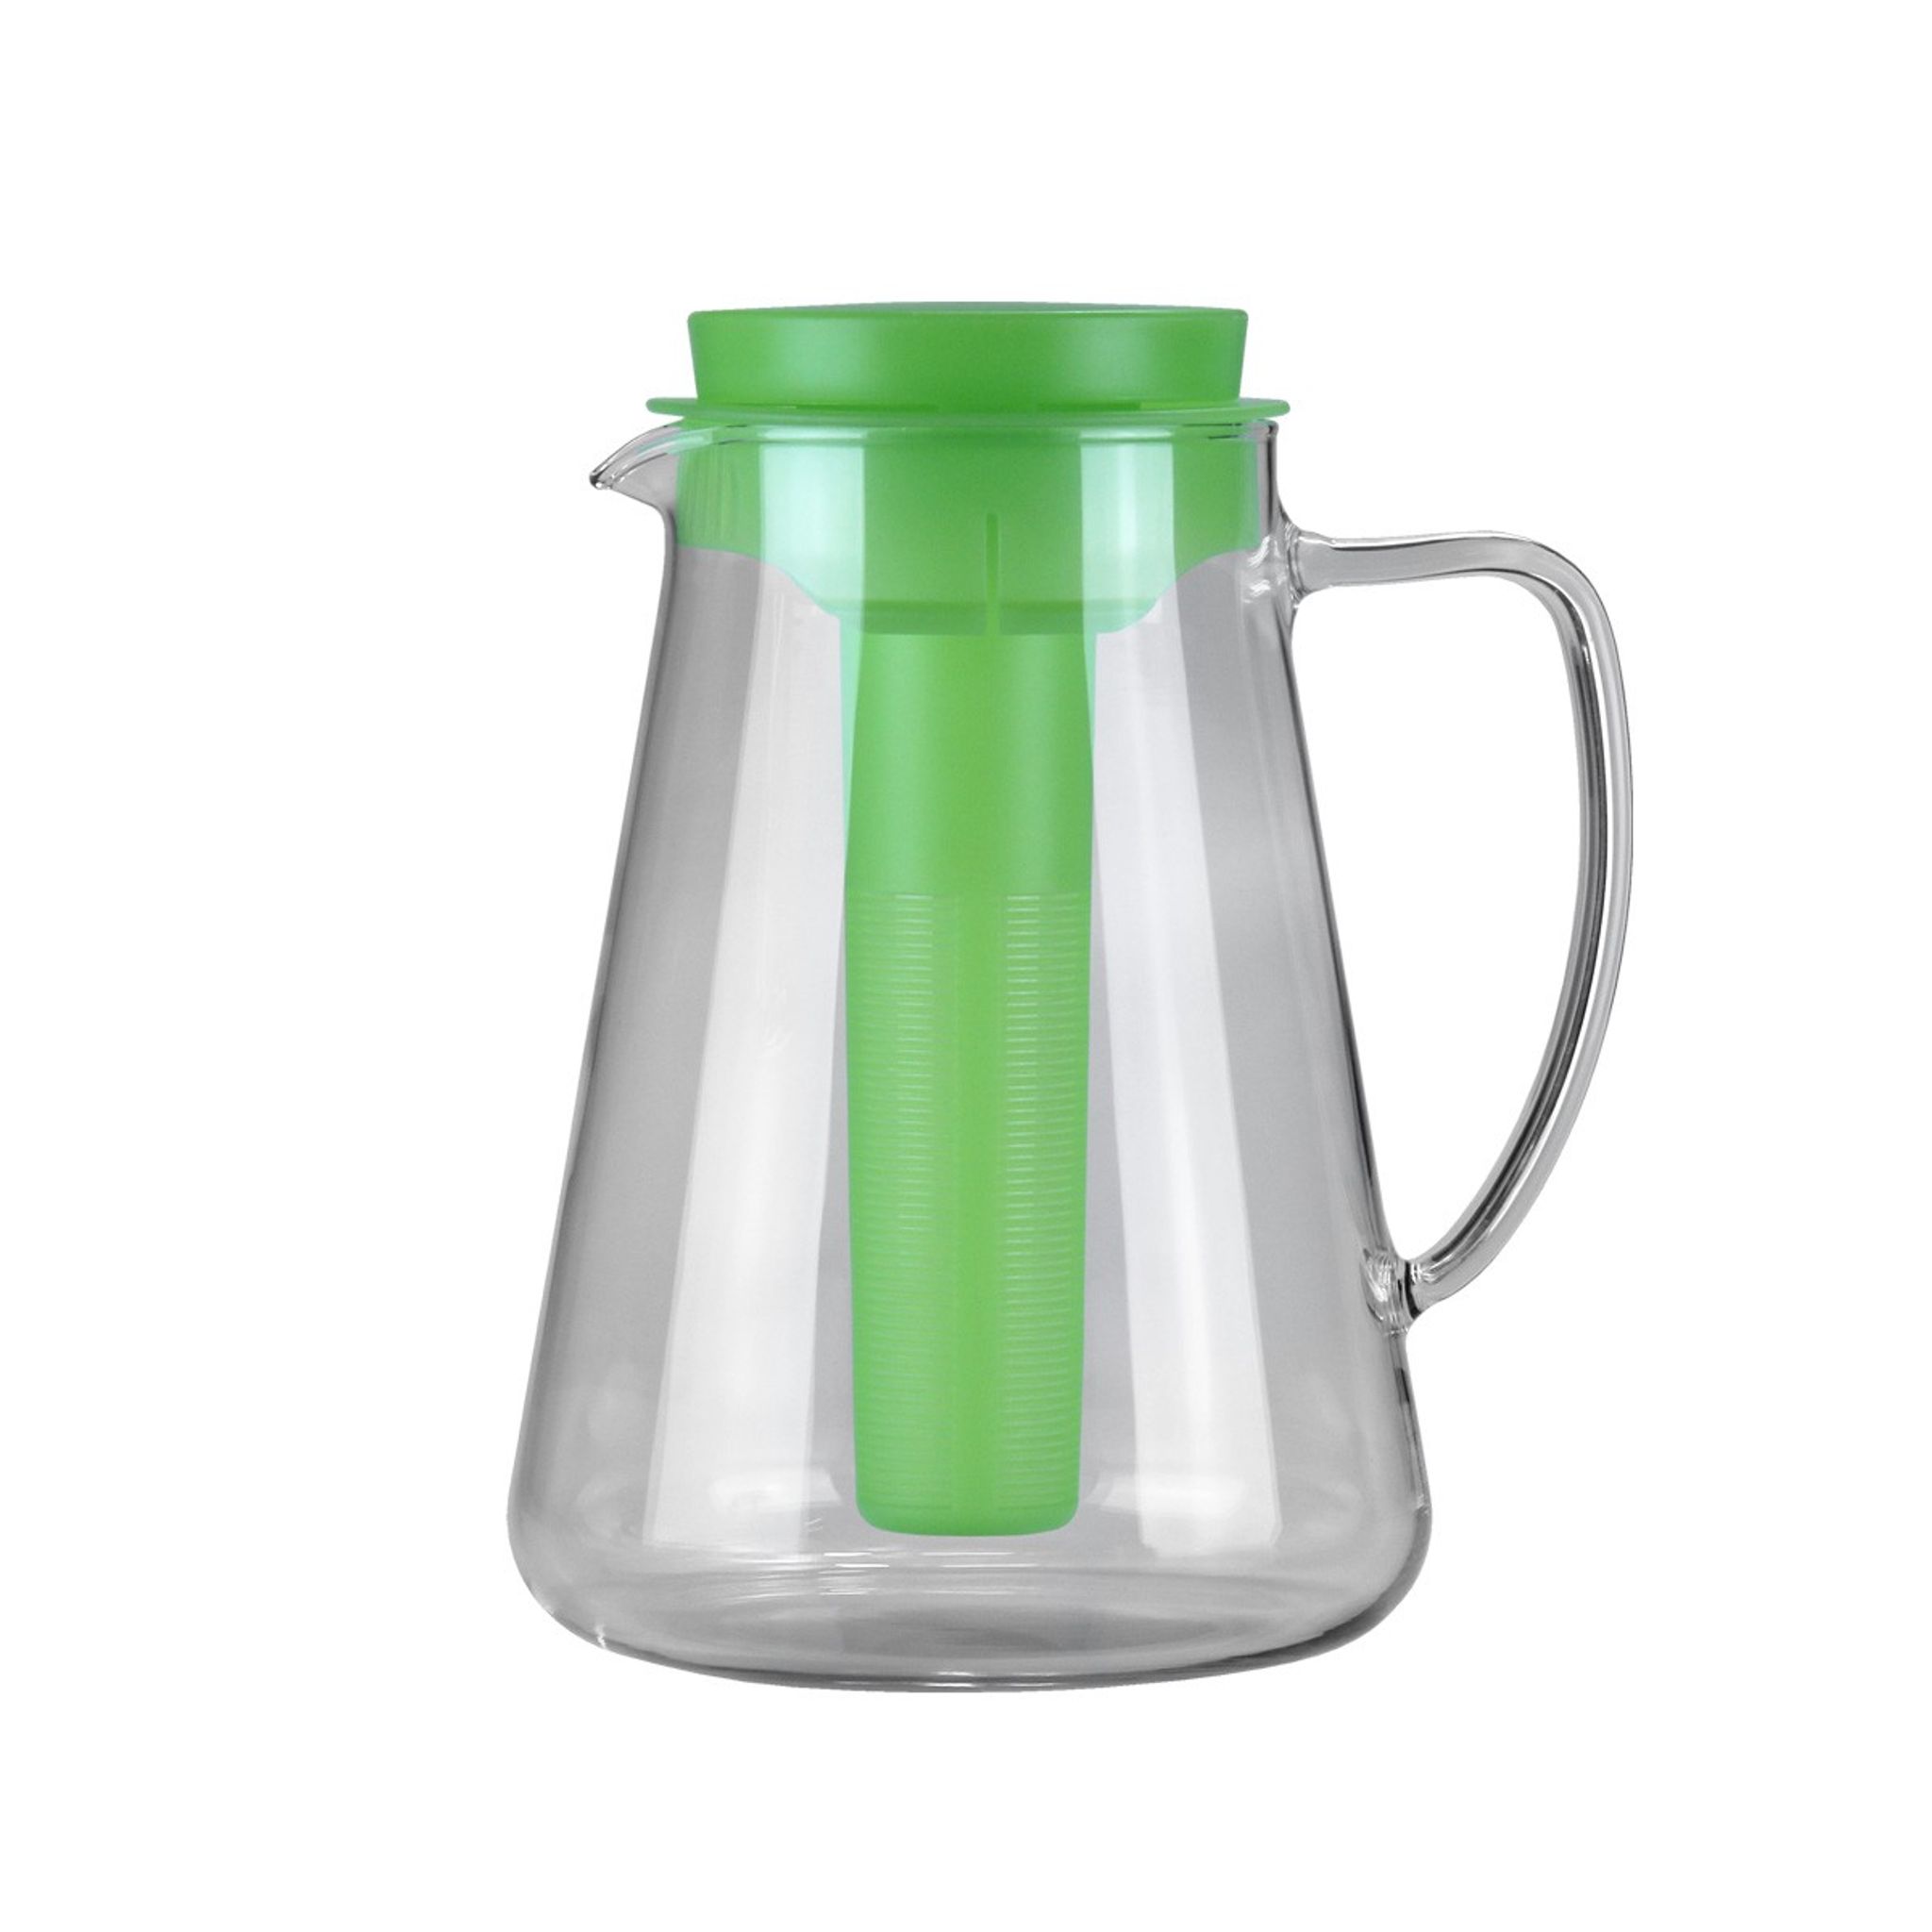 Caraffa TEO 2.5 l, con filtro infusore e refrigeratore, verde